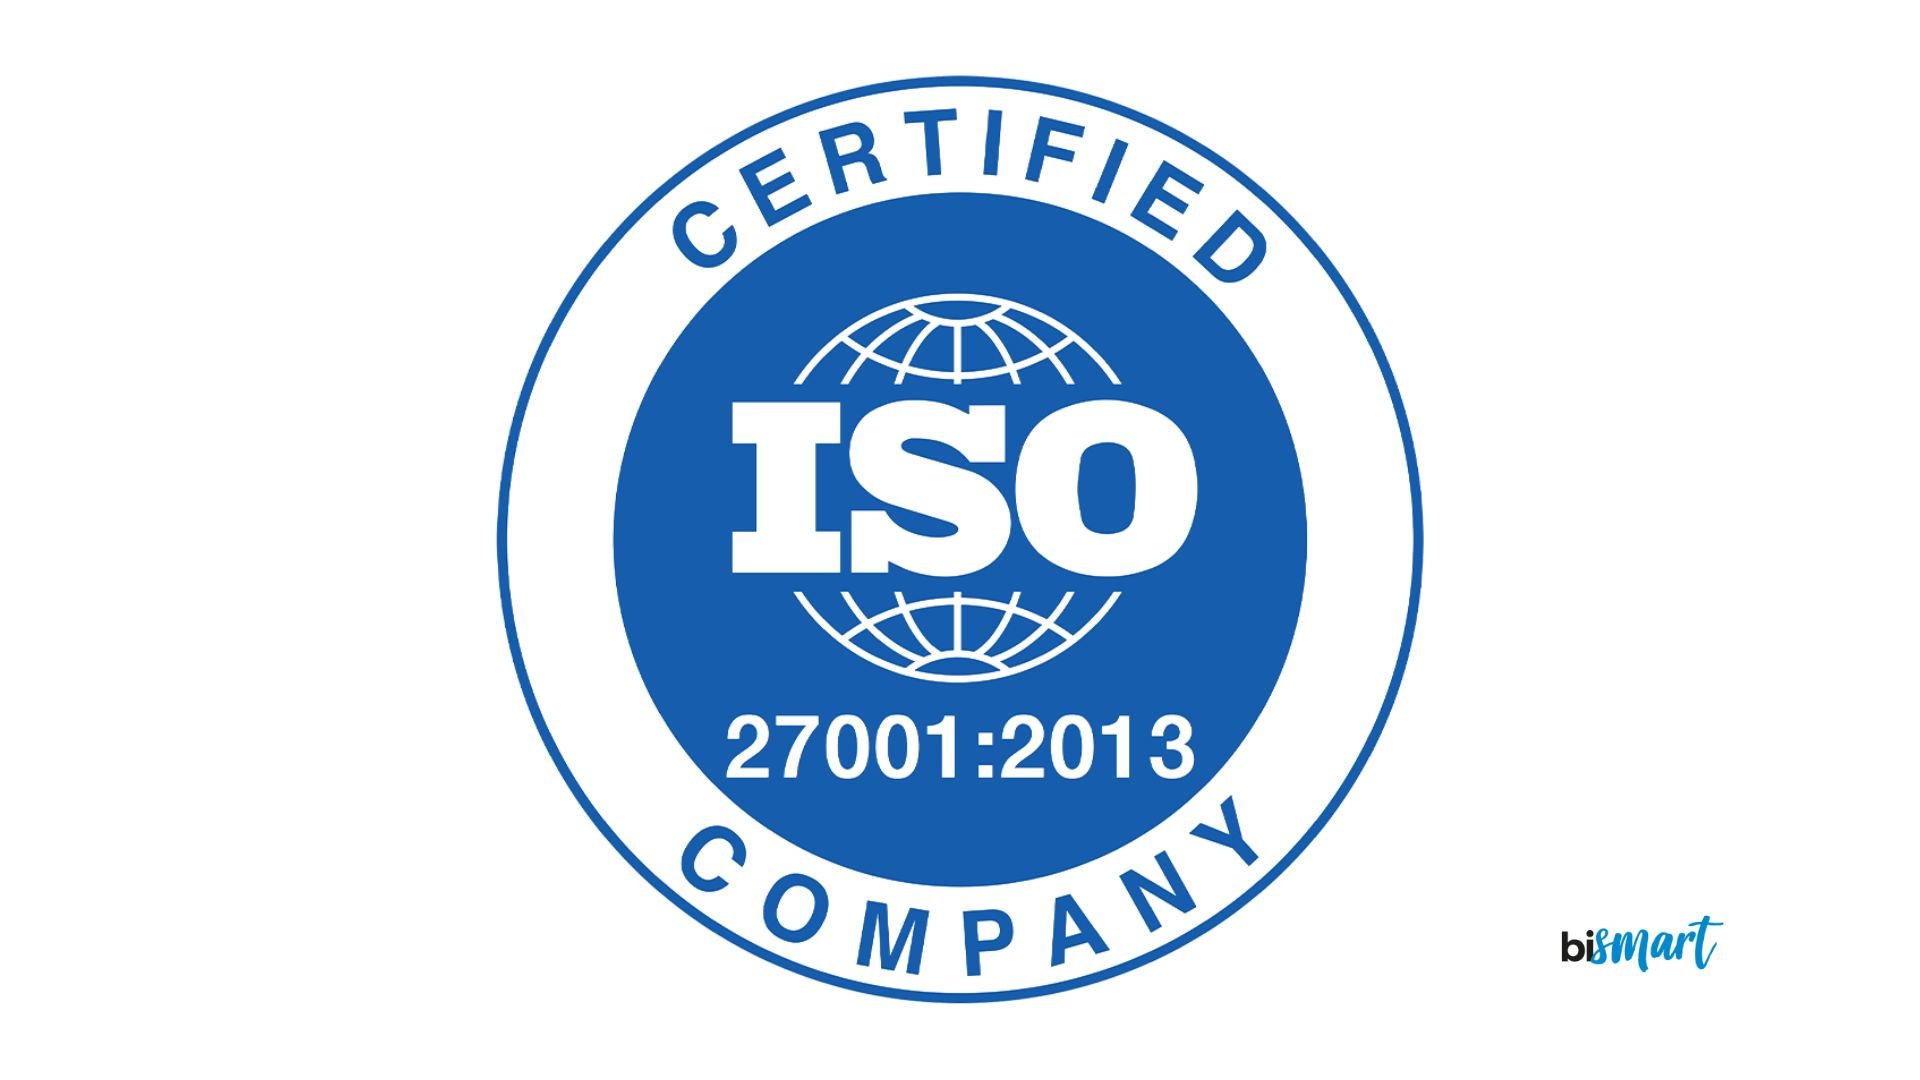 ¡Bismart obtiene el certificado ISO 27001!